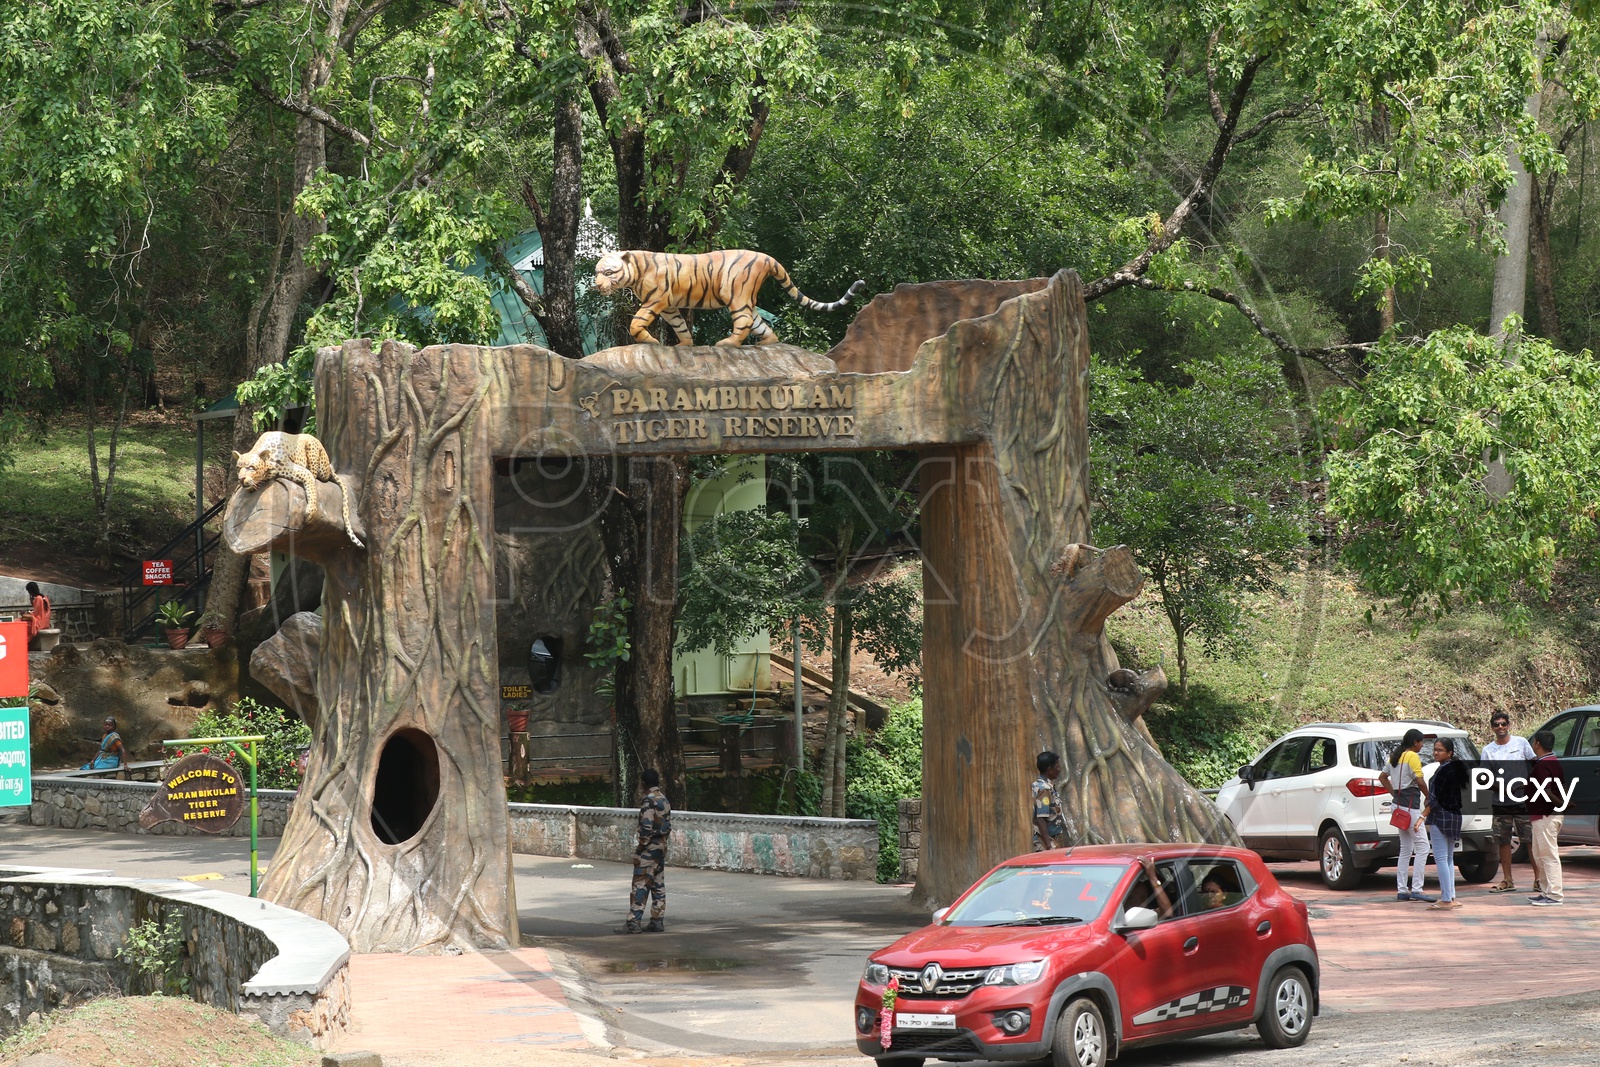 Entrance arch and road at Parambikulam Tiger Reserve